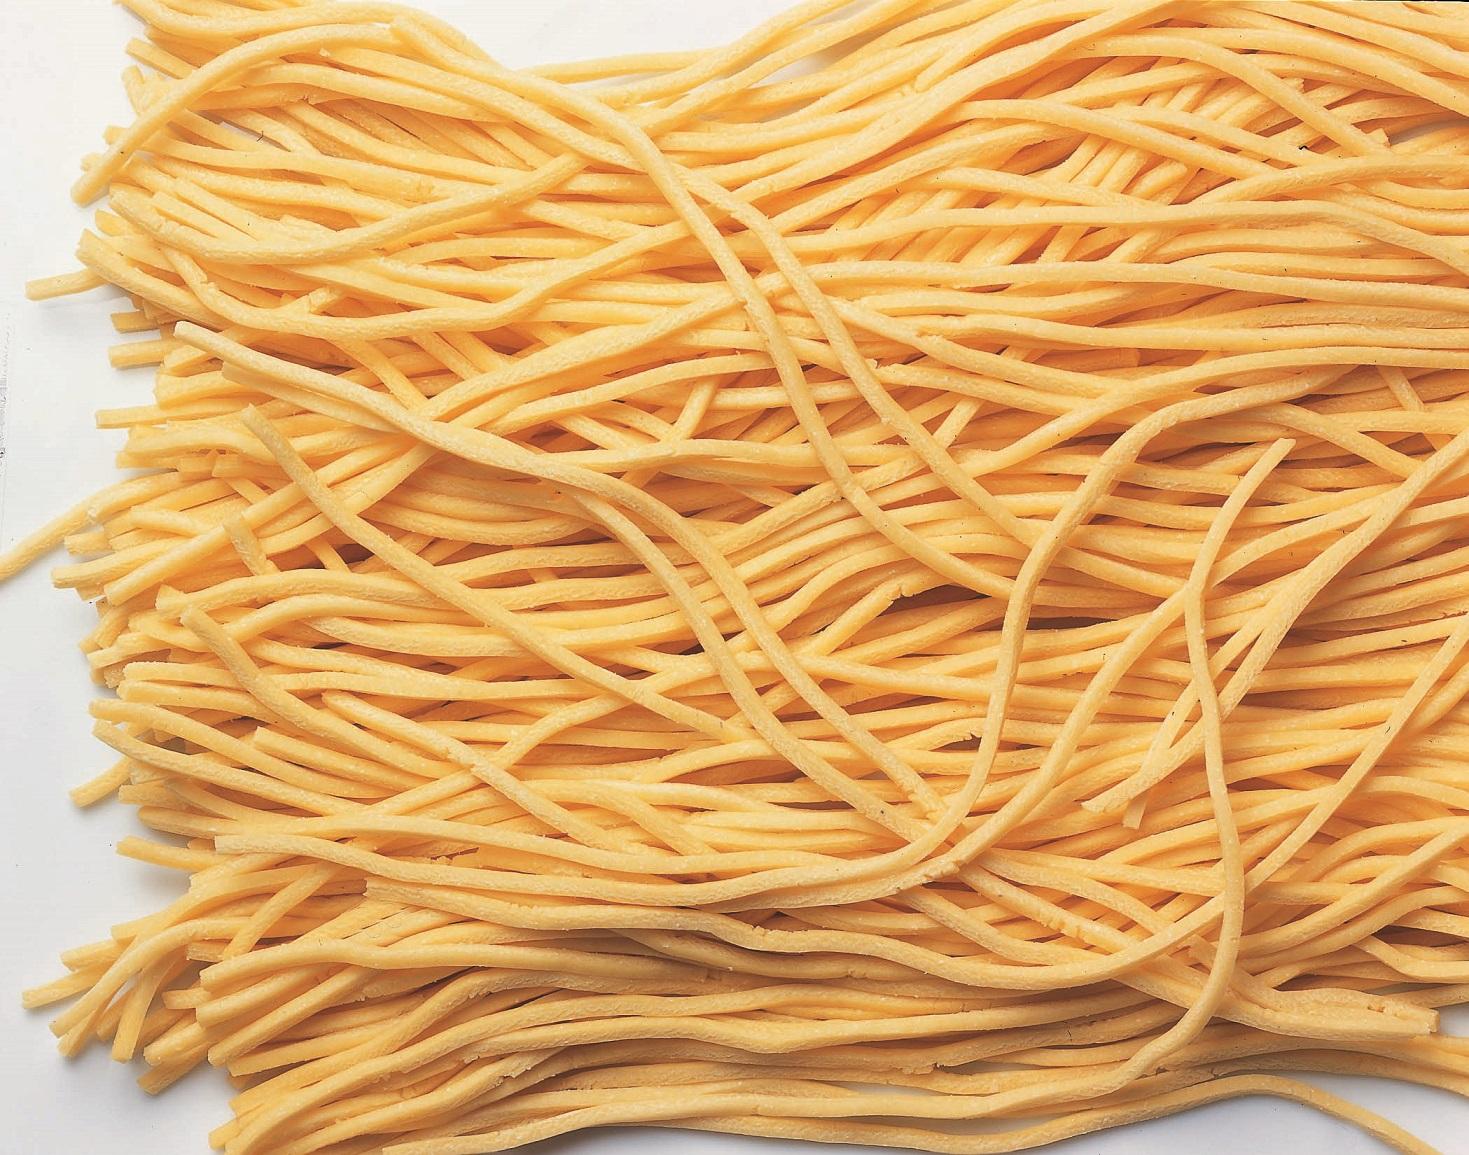 PASTIFICIO F.B Pasta Spaghetti alla Chitarra farina di grano tenero, semola di grano duro (6 x 250 g) TMC 2 settimane - 3 minuti di cottura